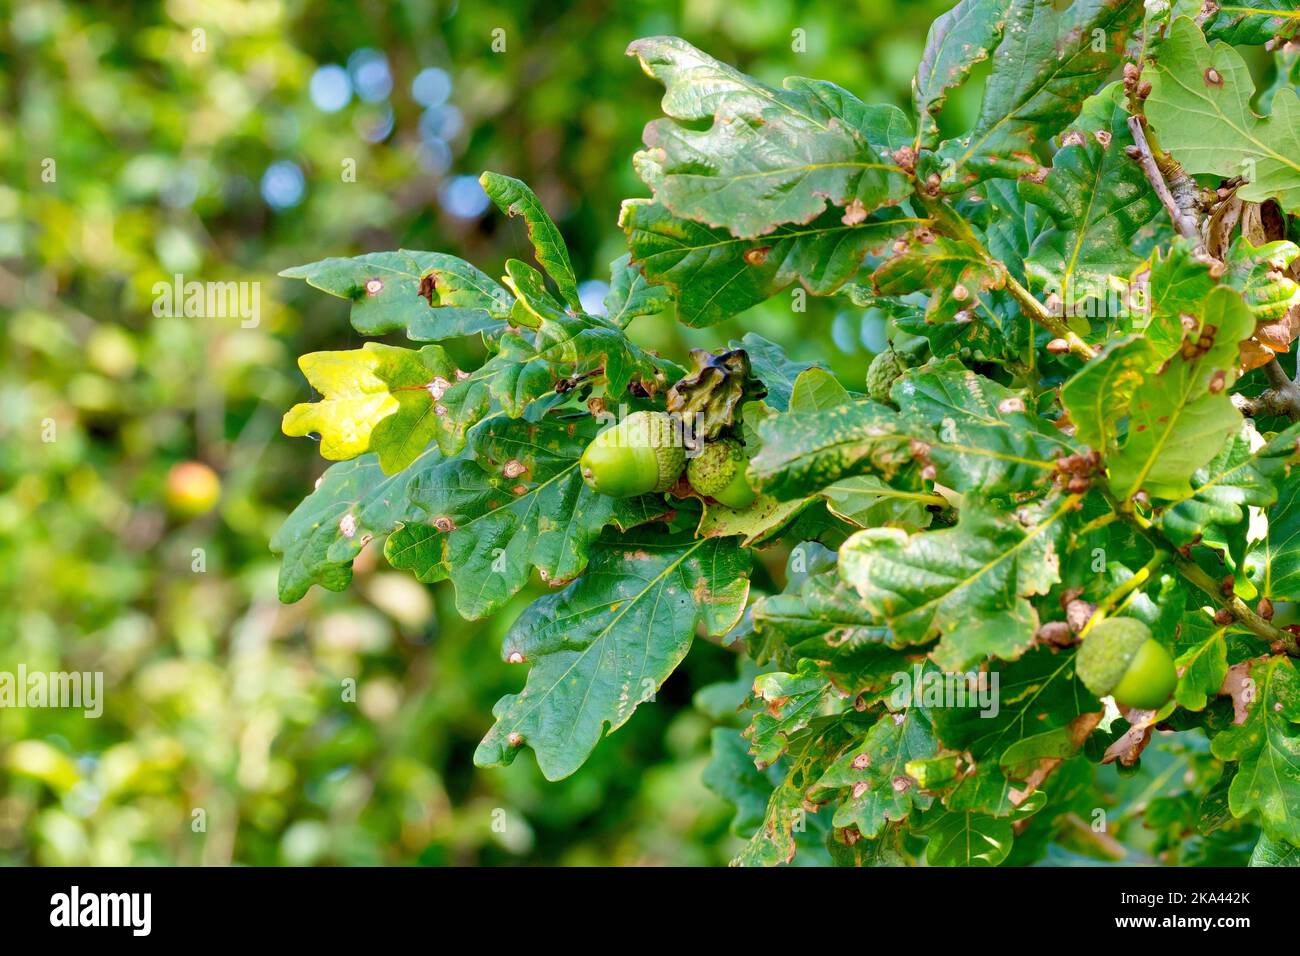 Gros plan d'acorns suspendus entre les feuilles d'un chêne, y compris un déformé par le Knopper Oak Gall Wasp (andricus quercuscalicis). Banque D'Images